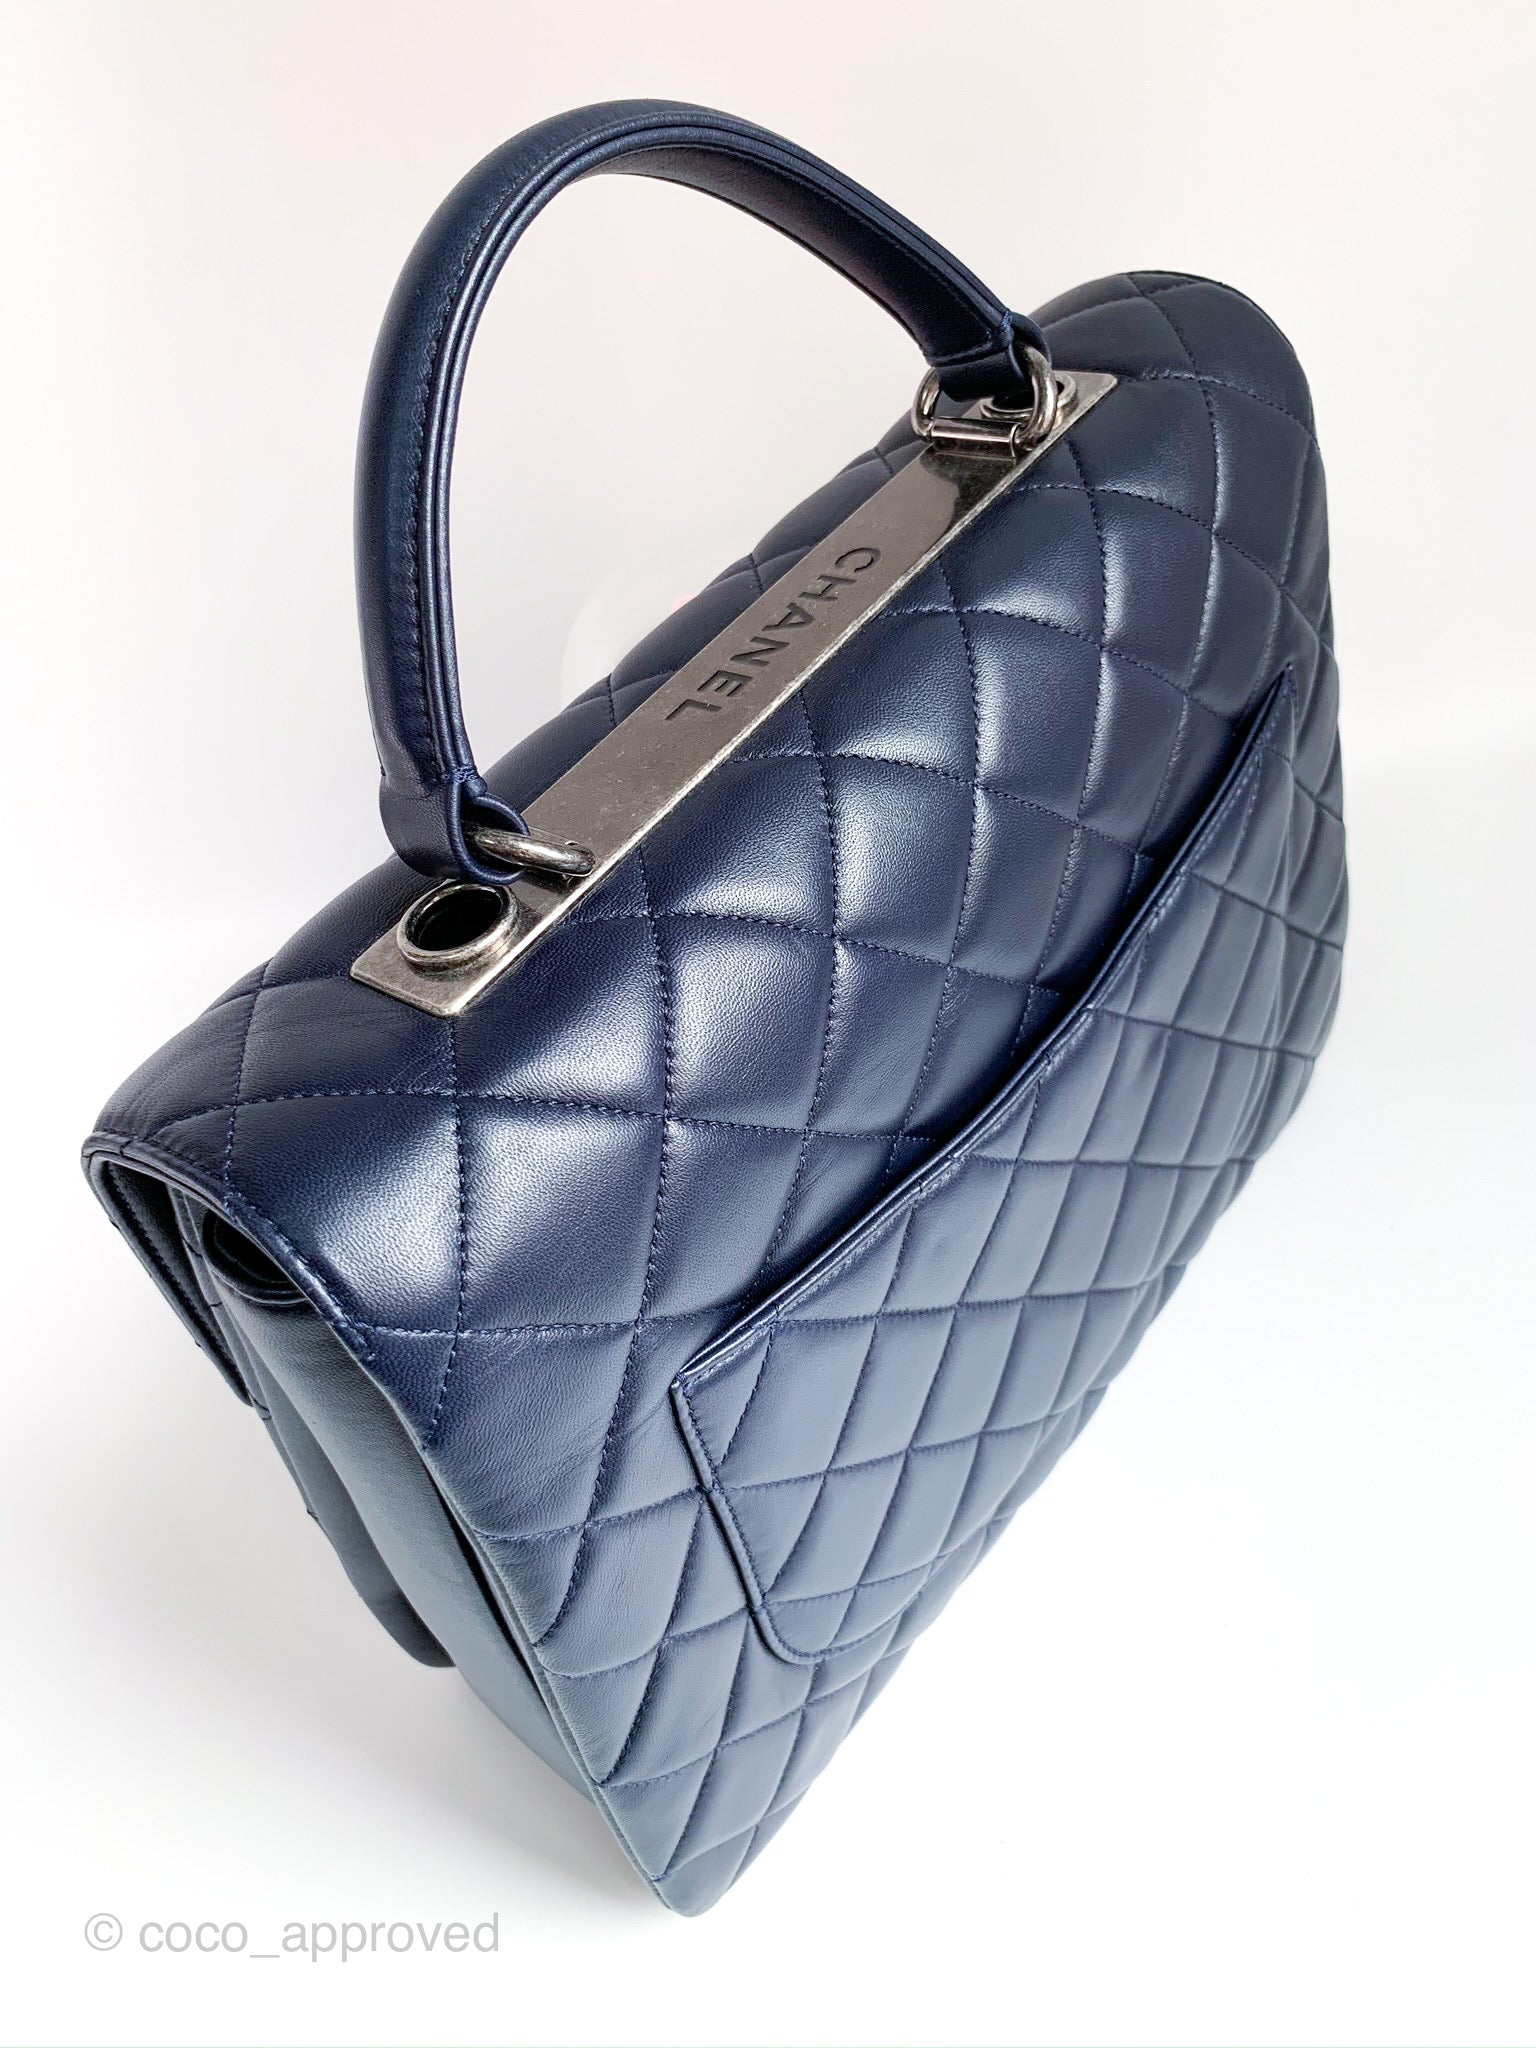 Chanel Trendy CC Flap Bag - tortuGAGA®